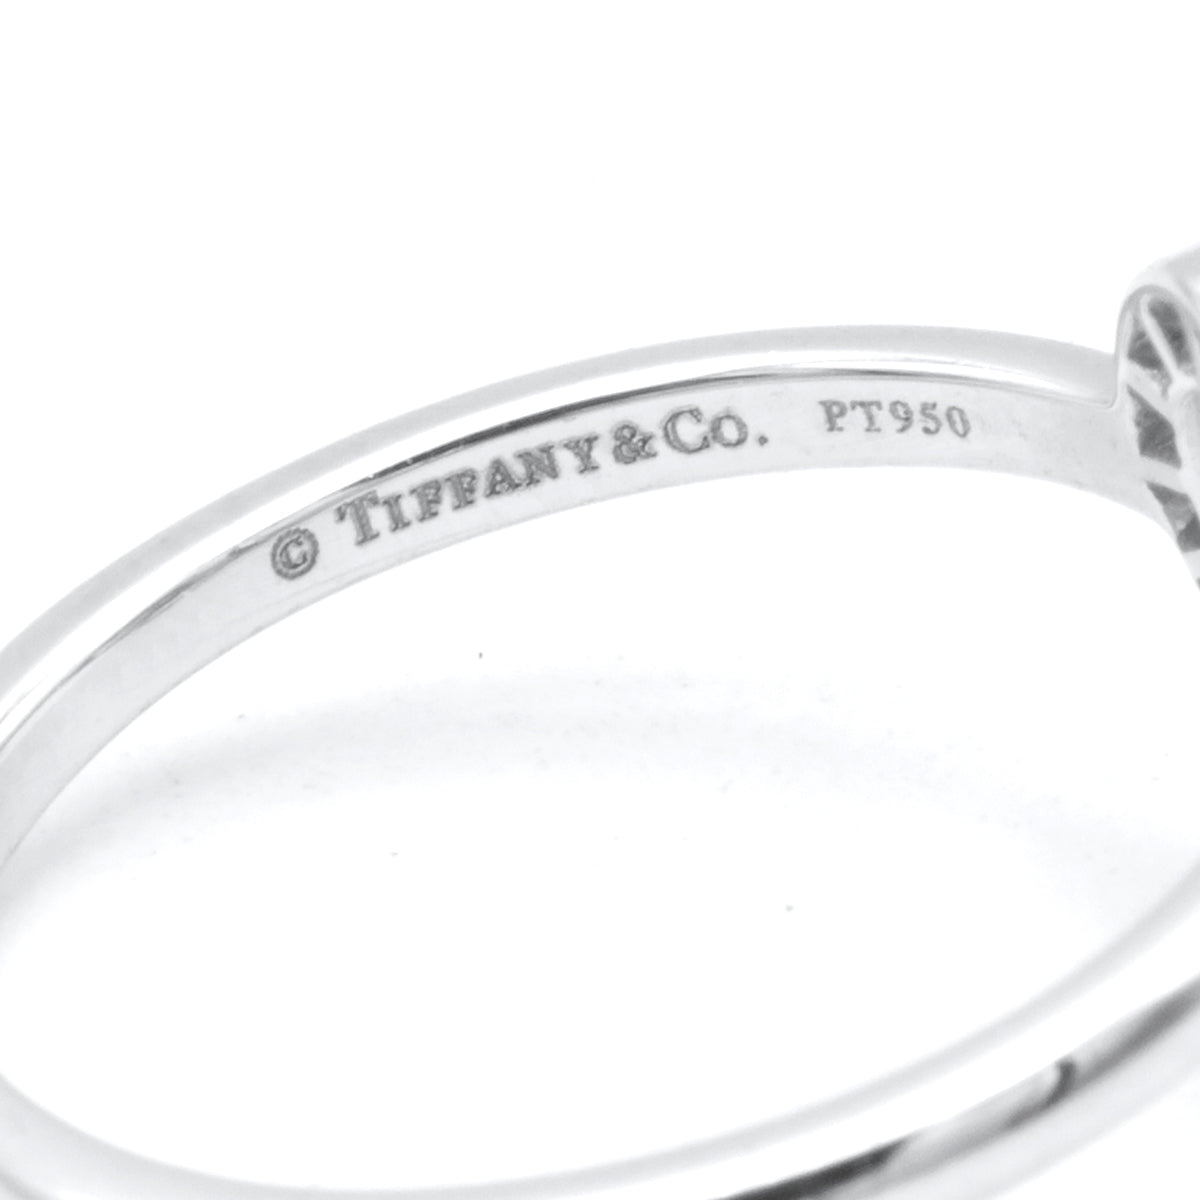 Tiffany Heart platinium ring